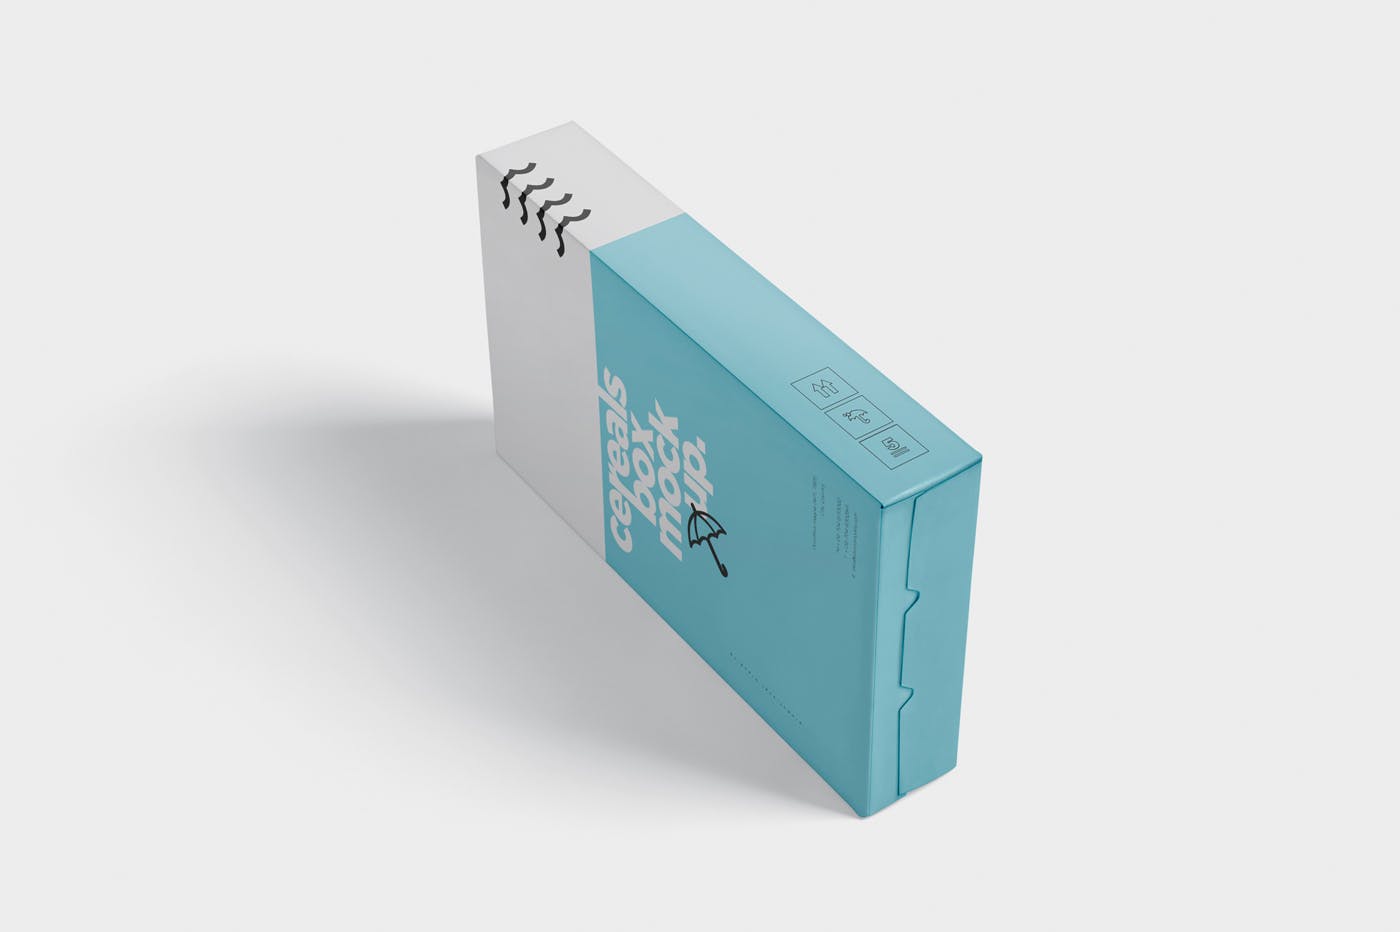 香烟/避孕套/扑克牌适用的超薄包装盒外观设计样机 Cereals Box Mockup – Slim Size Box插图6